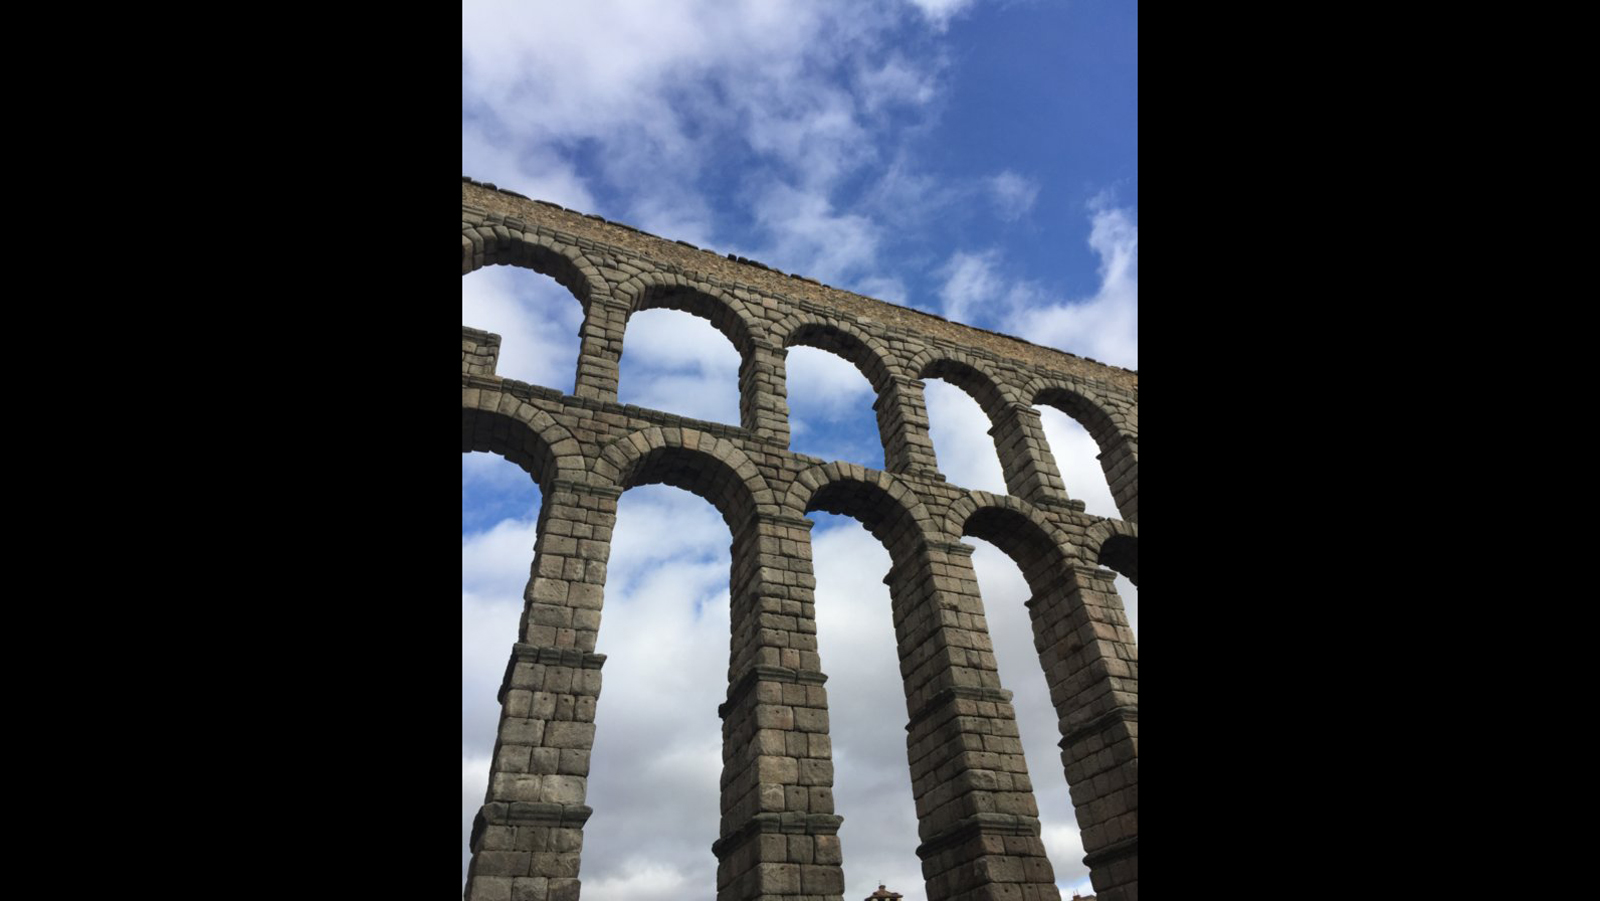 Aquaduct - Segovia, Spain